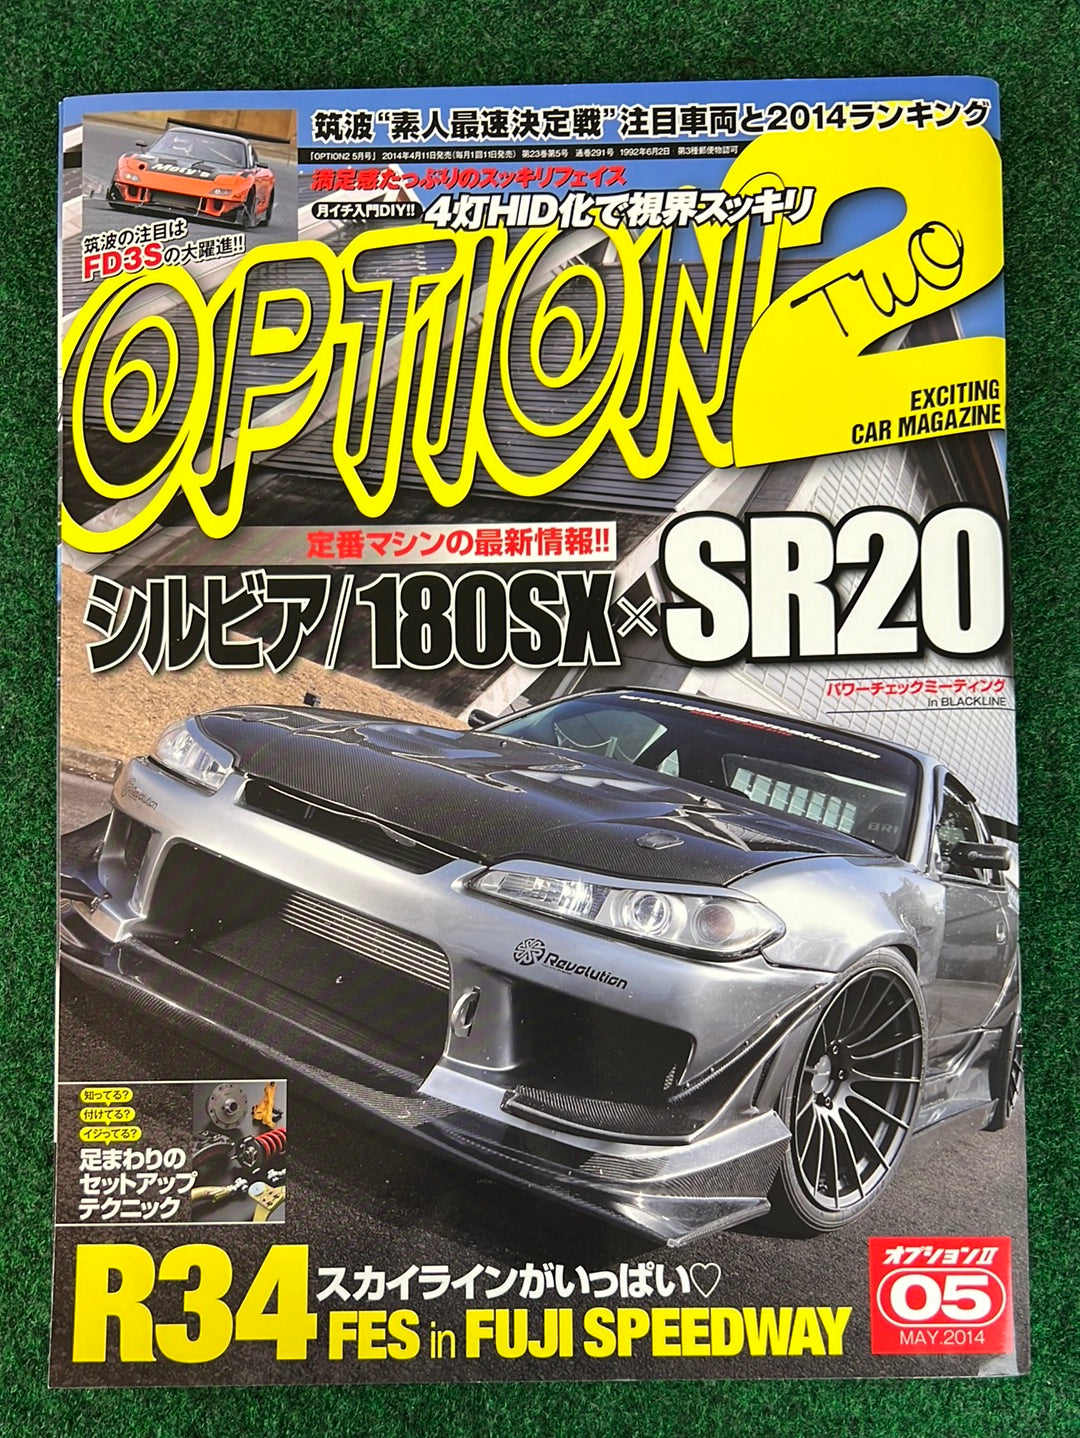 OPTION2 Magazine - May 2014